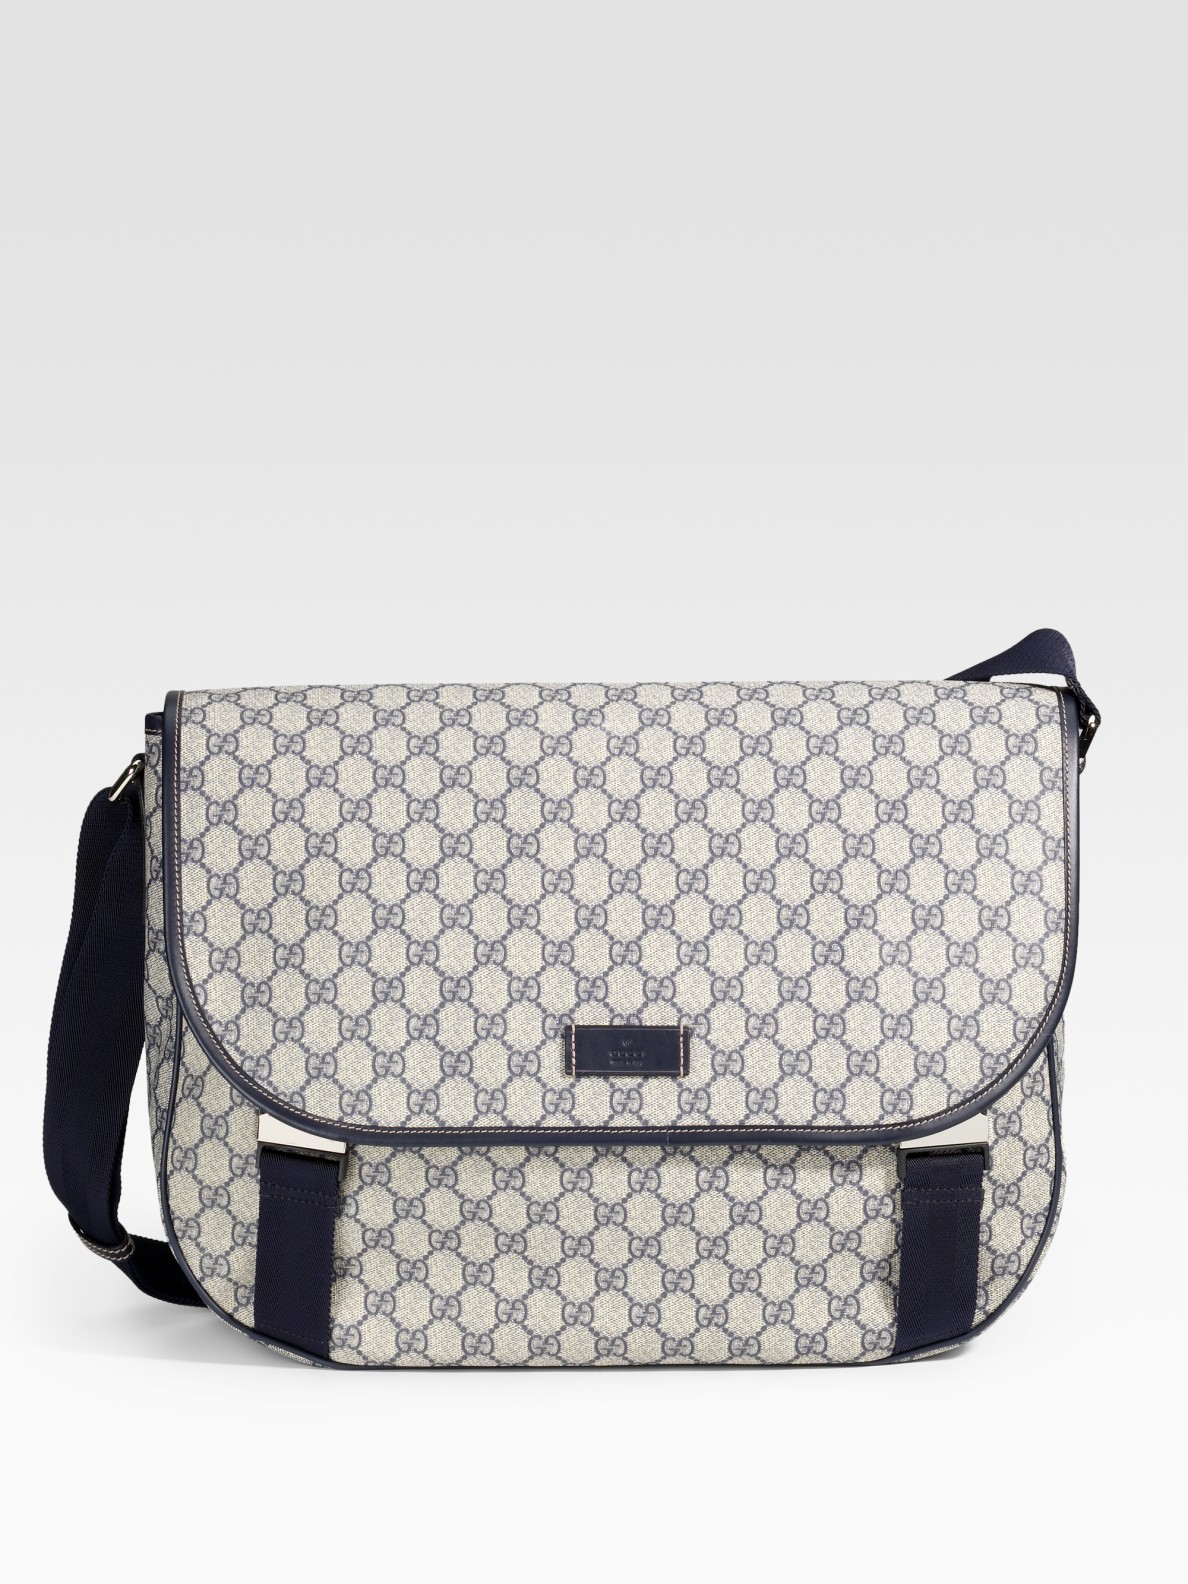 Gucci Flap Messenger Bag in Beige (Natural) for Men - Lyst